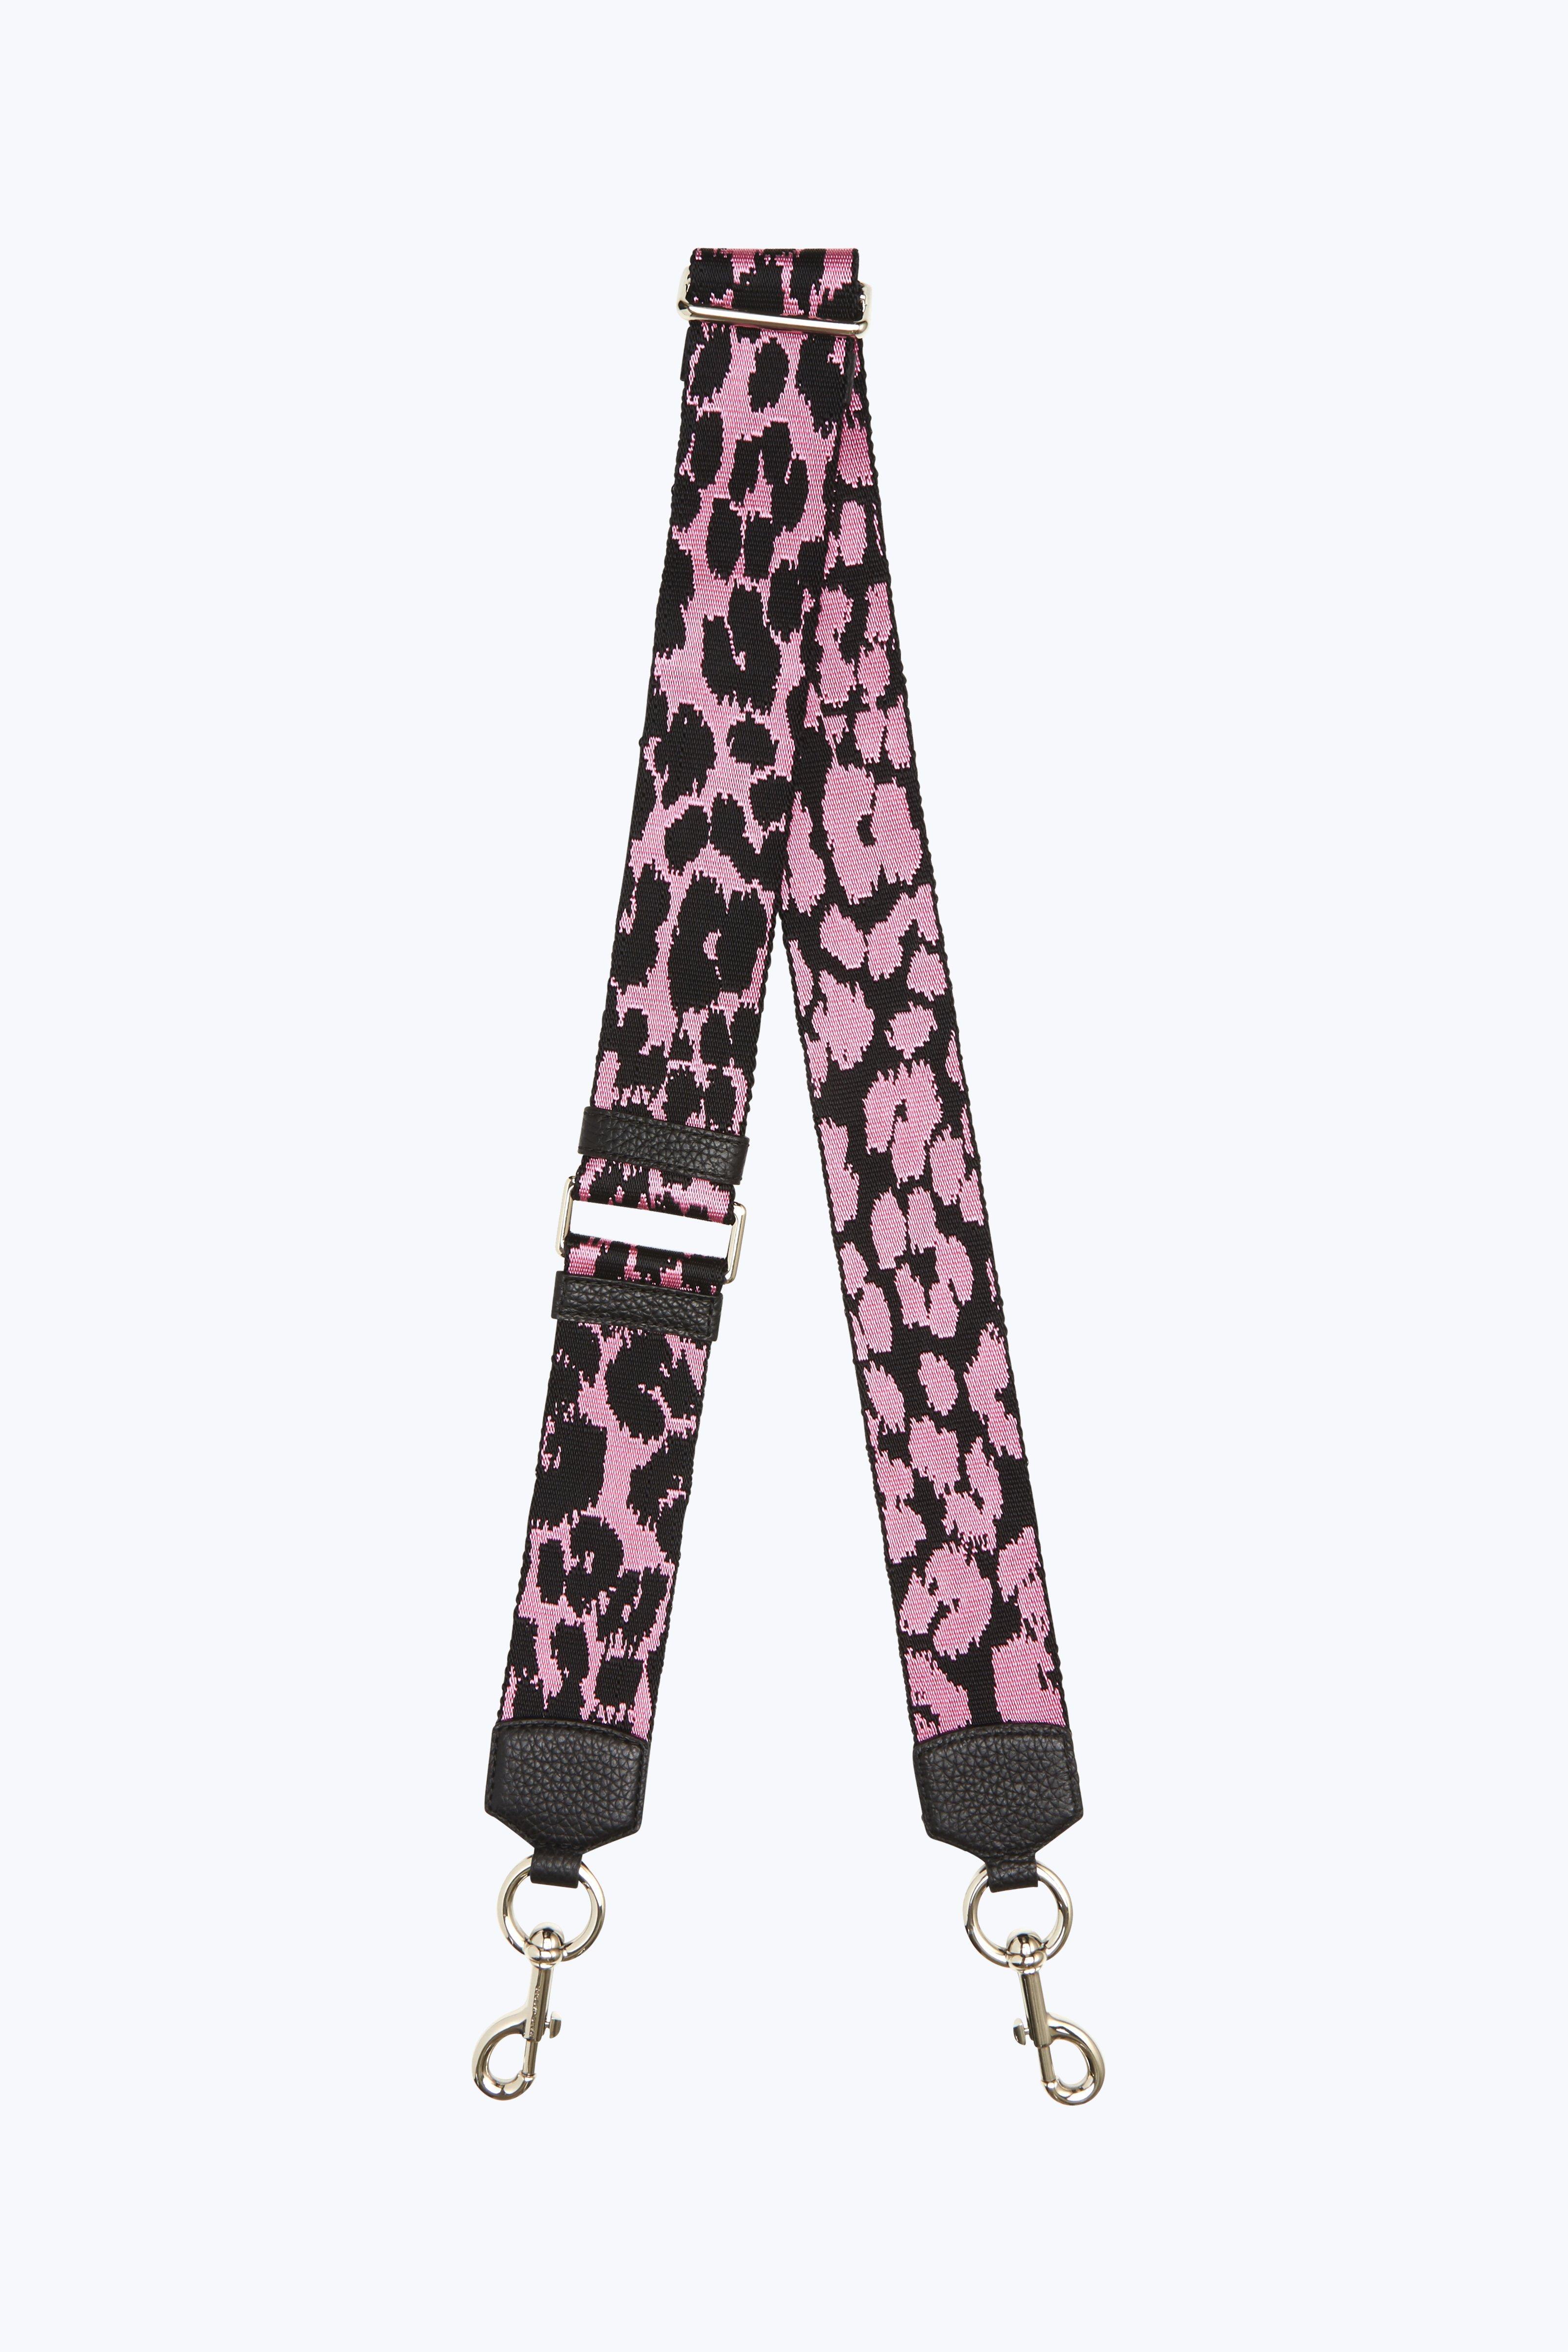 MARC JACOBS Snapshot leather shoulder bag pink leopard 10.5×18.5×6cm